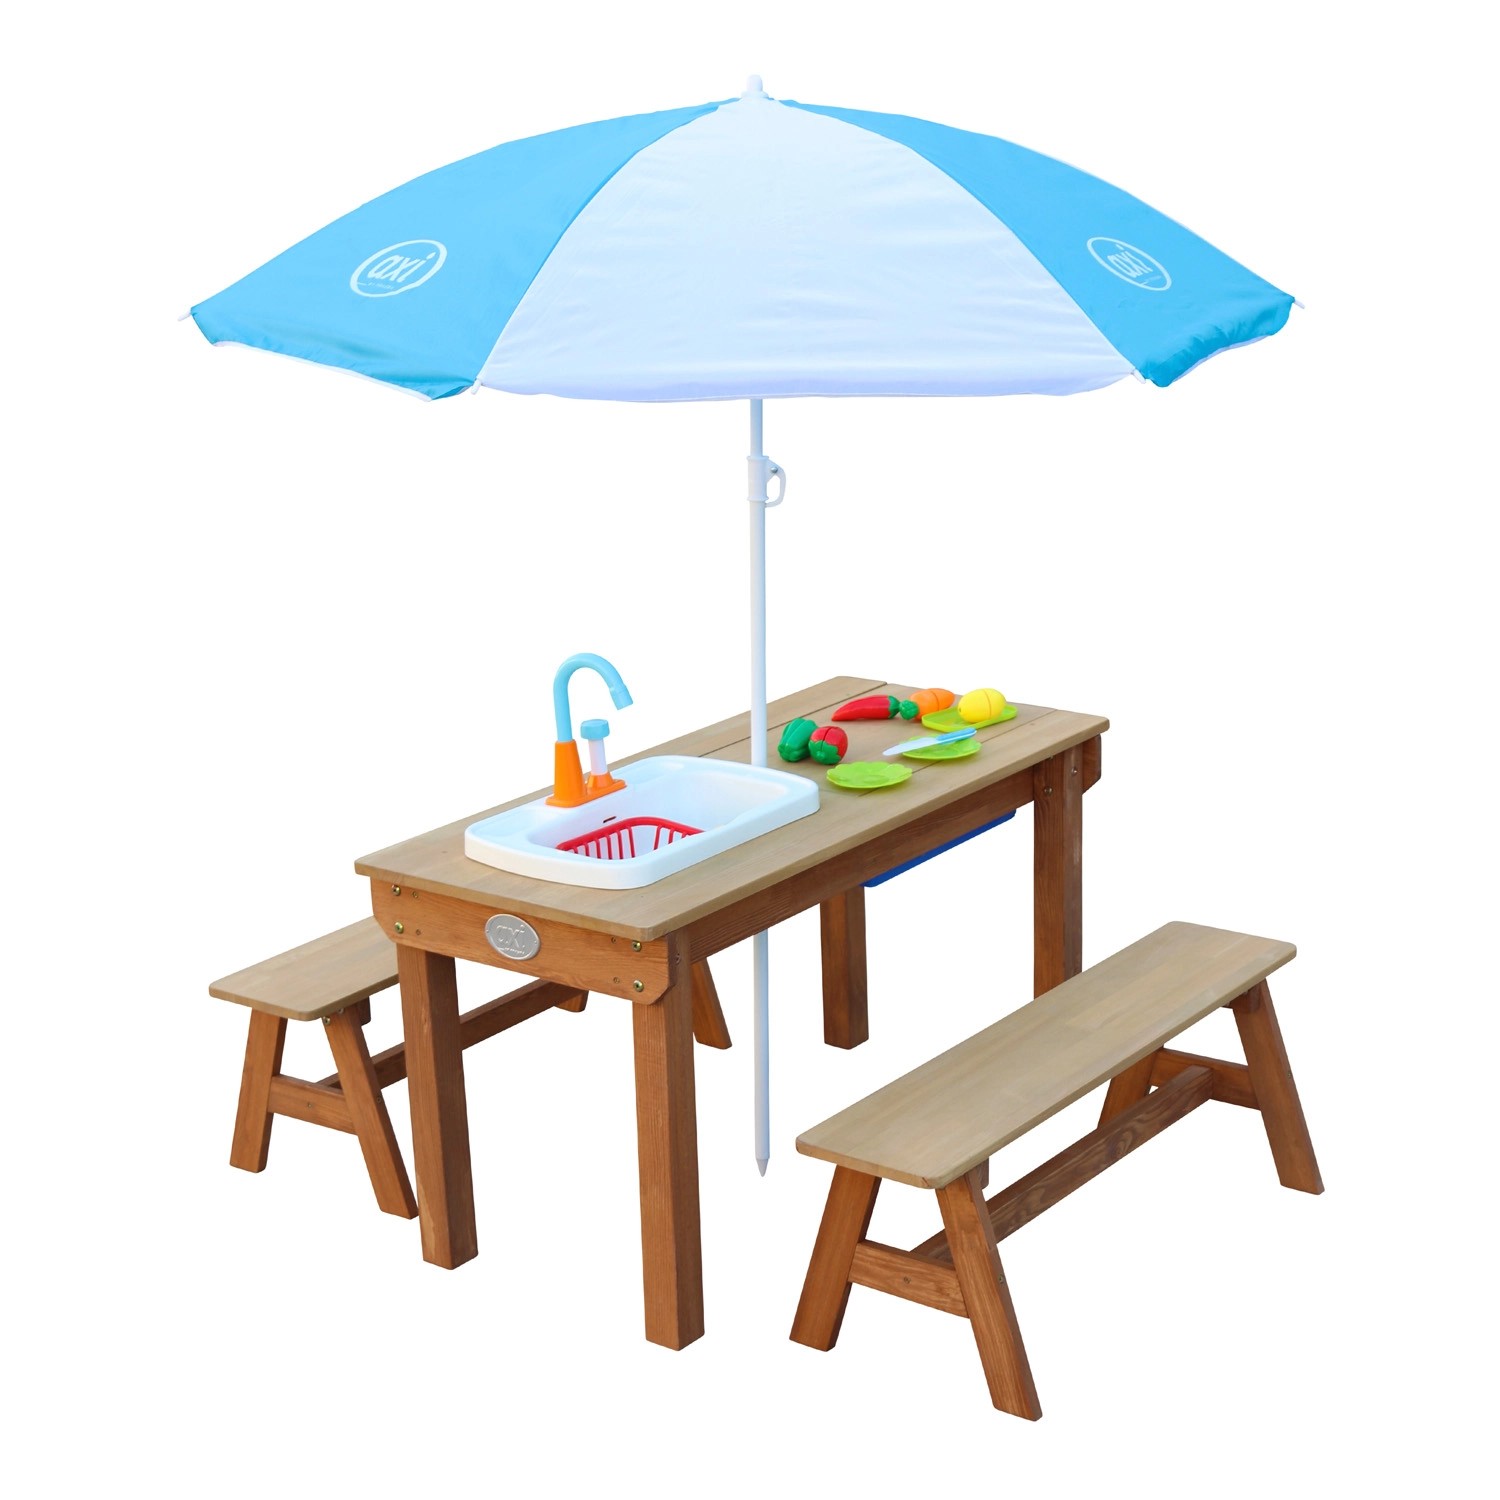 Axi Sand und Wasser Picknicktisch Dennis Braun mit Sonnenschirm Blau Weiß